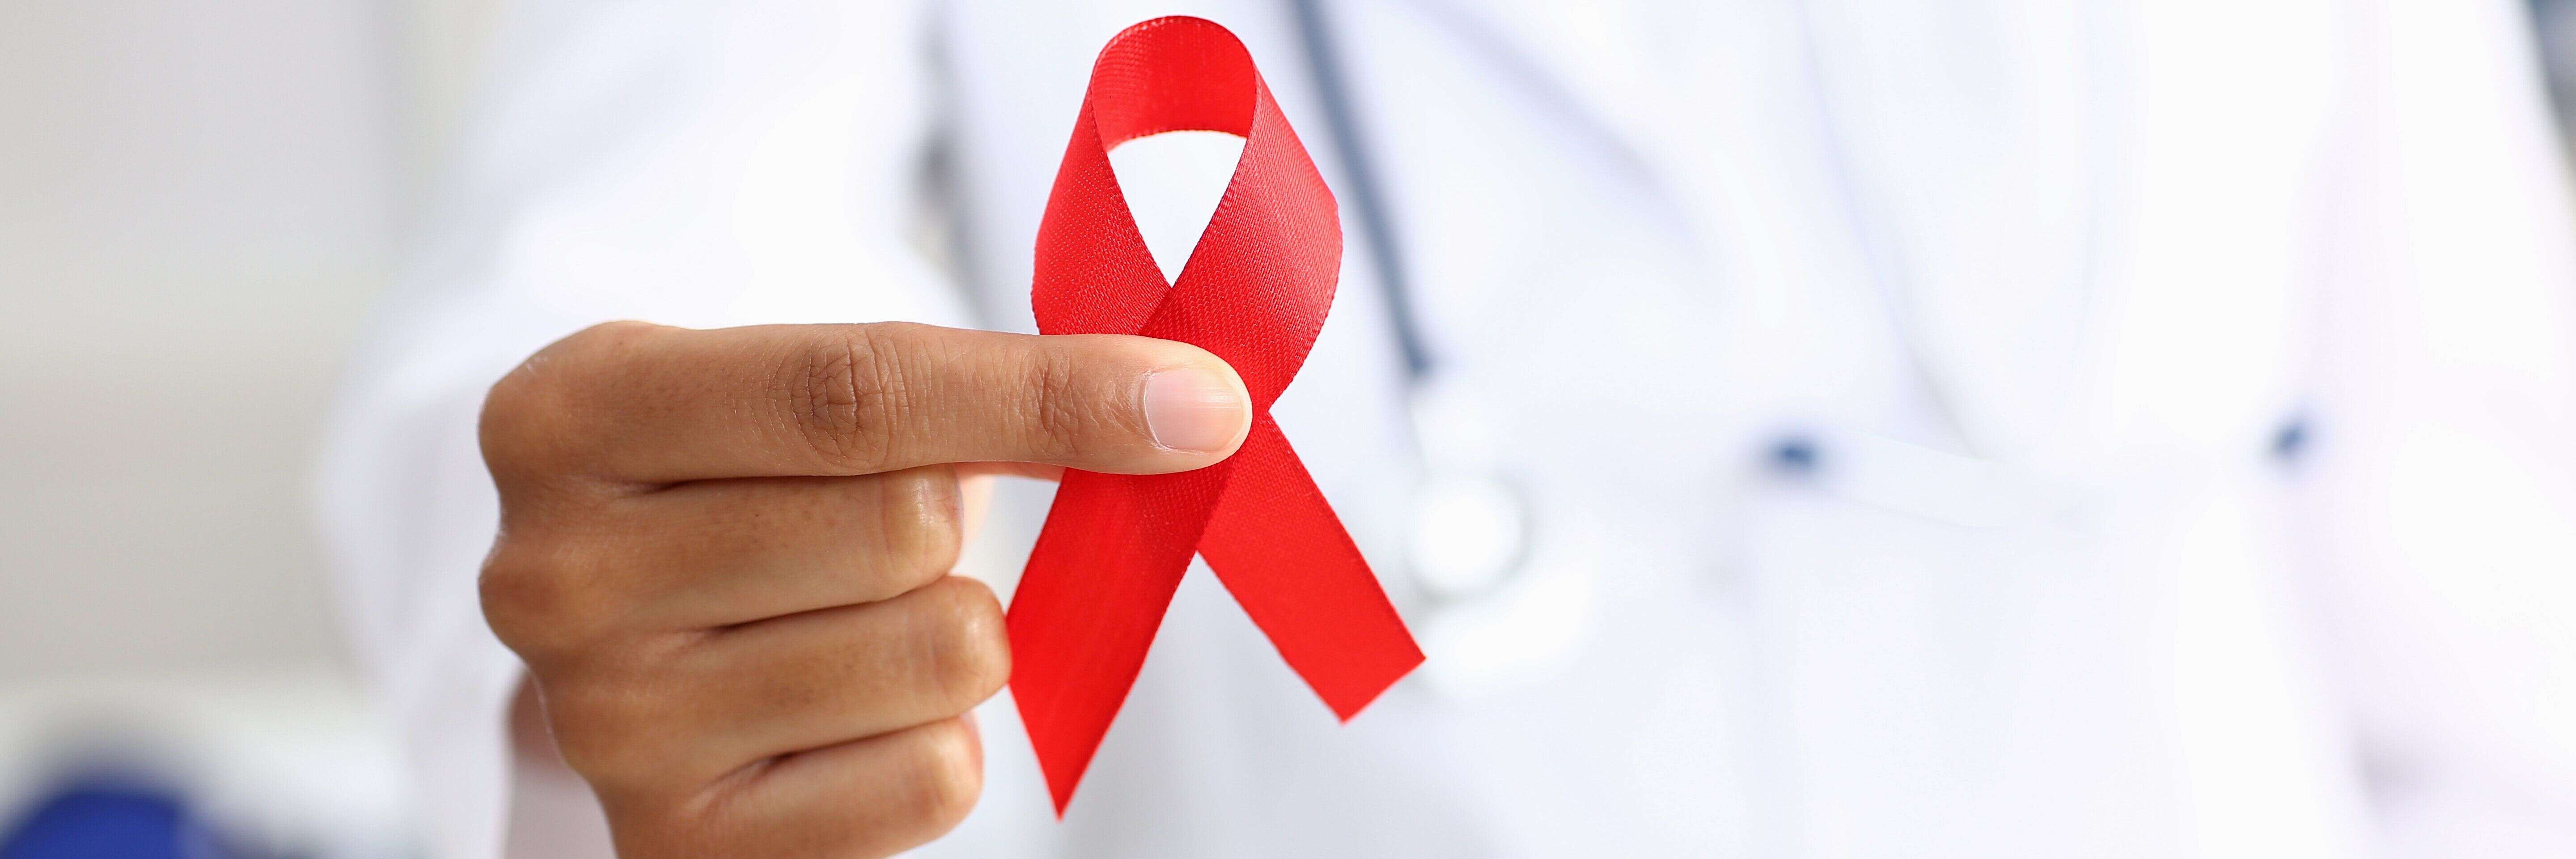 Le fonds mondiale de lutte contre me sida se mobilise pour la recherche (Image d'illustration)